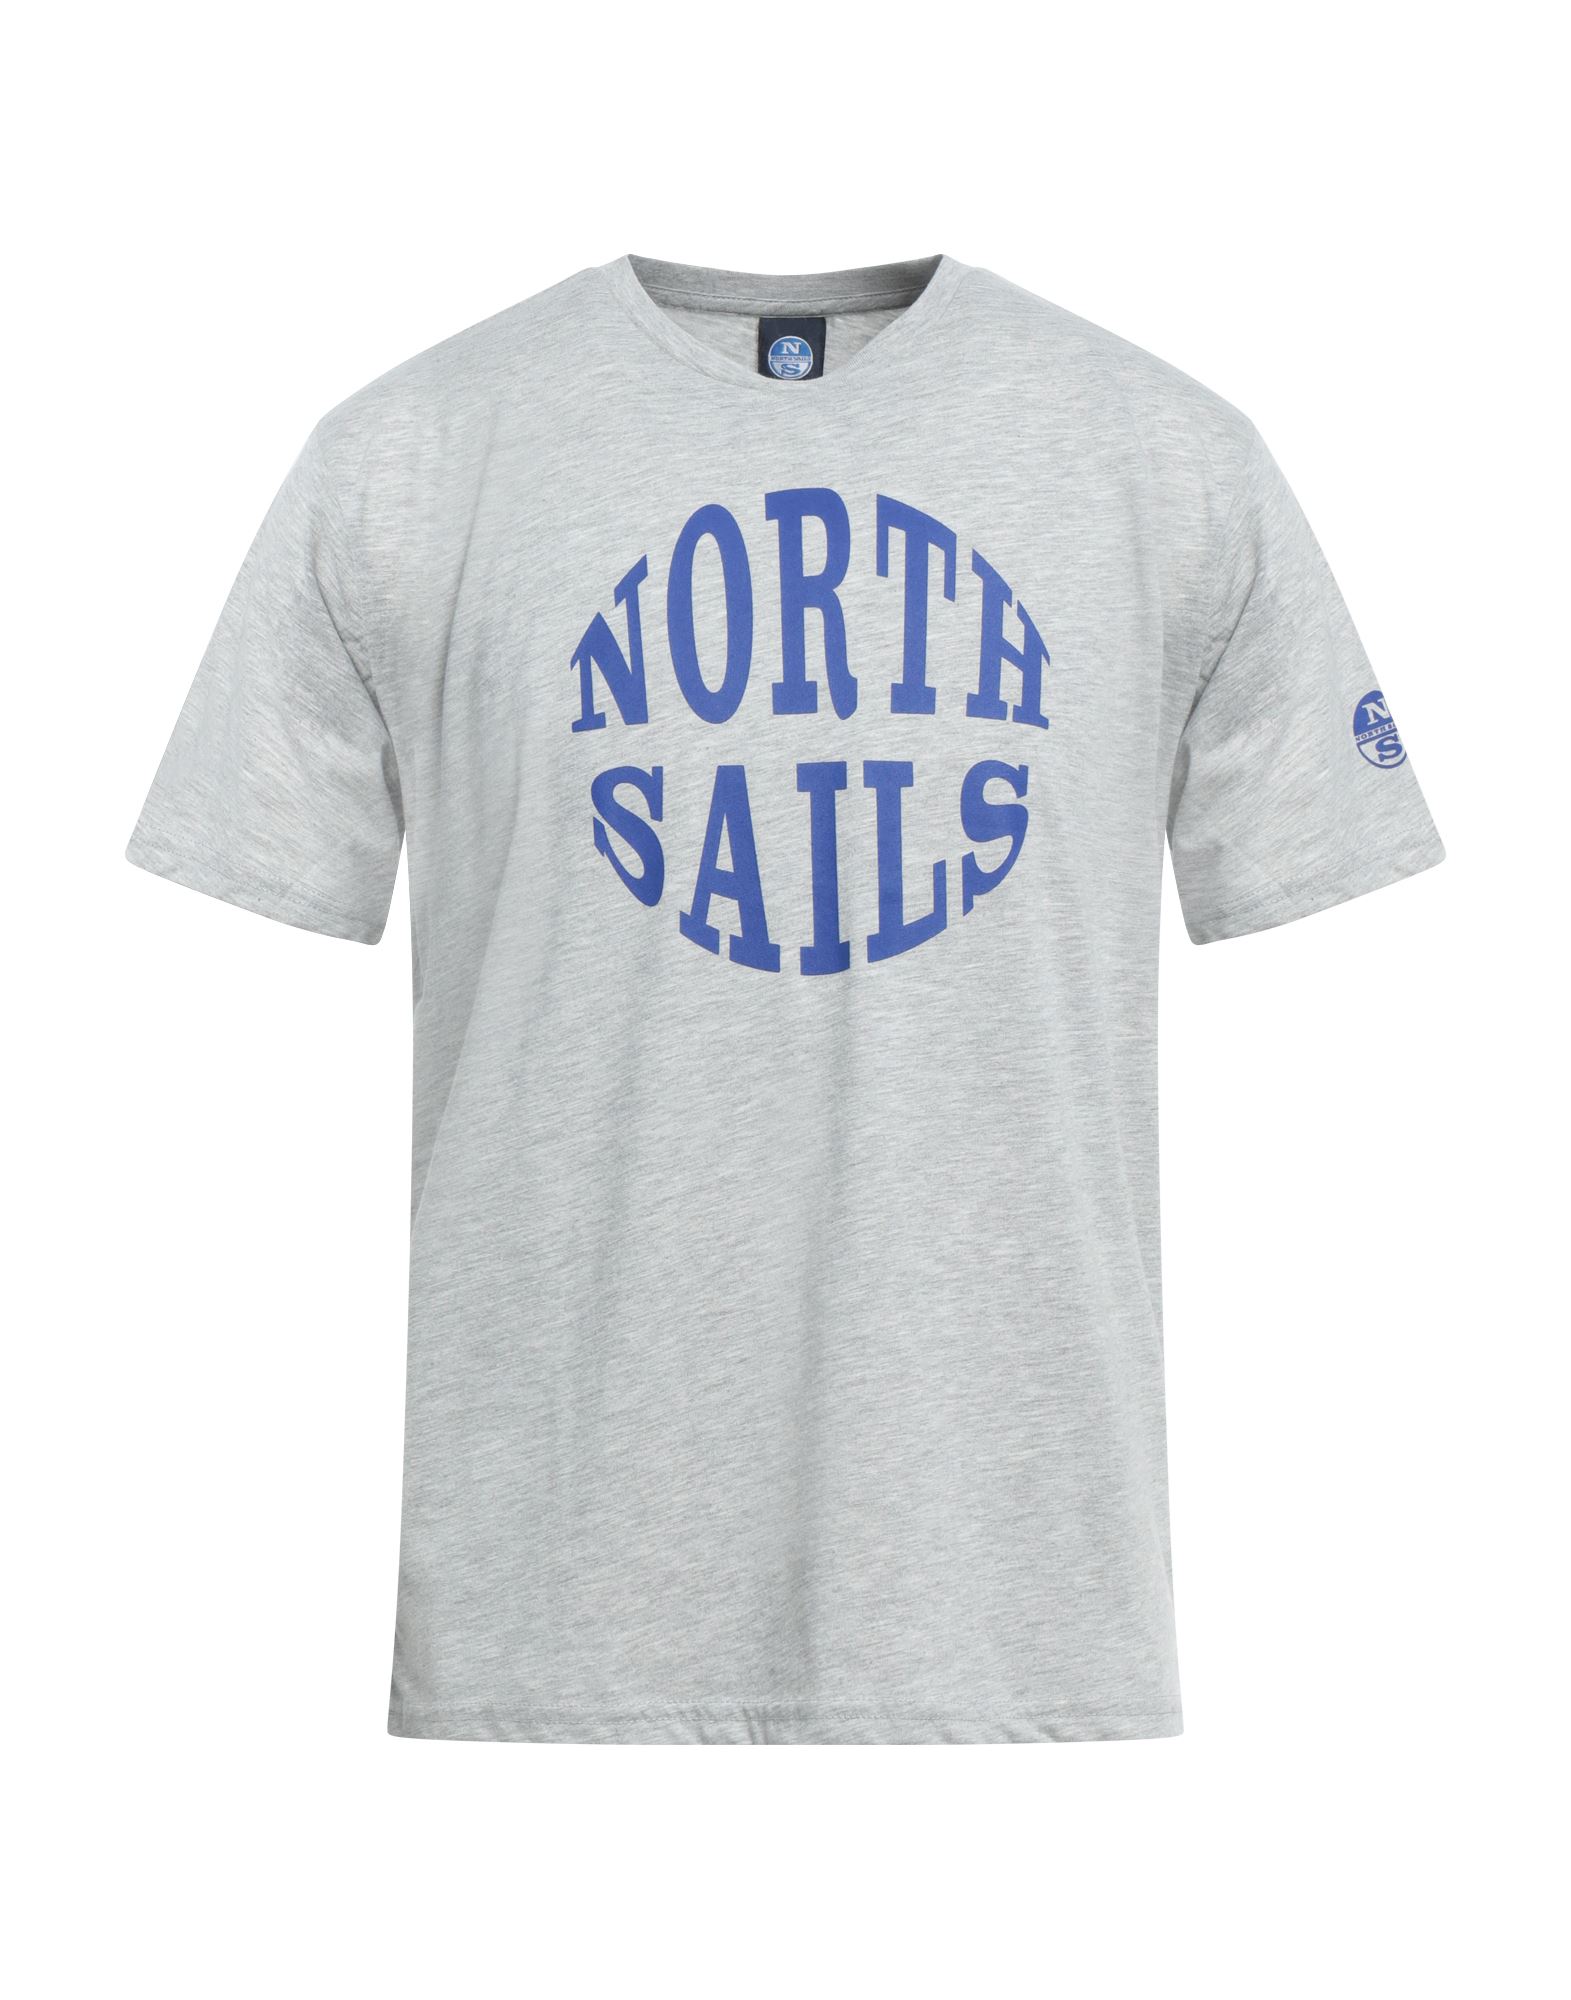 NORTH SAILS T-shirts Herren Hellgrau von NORTH SAILS